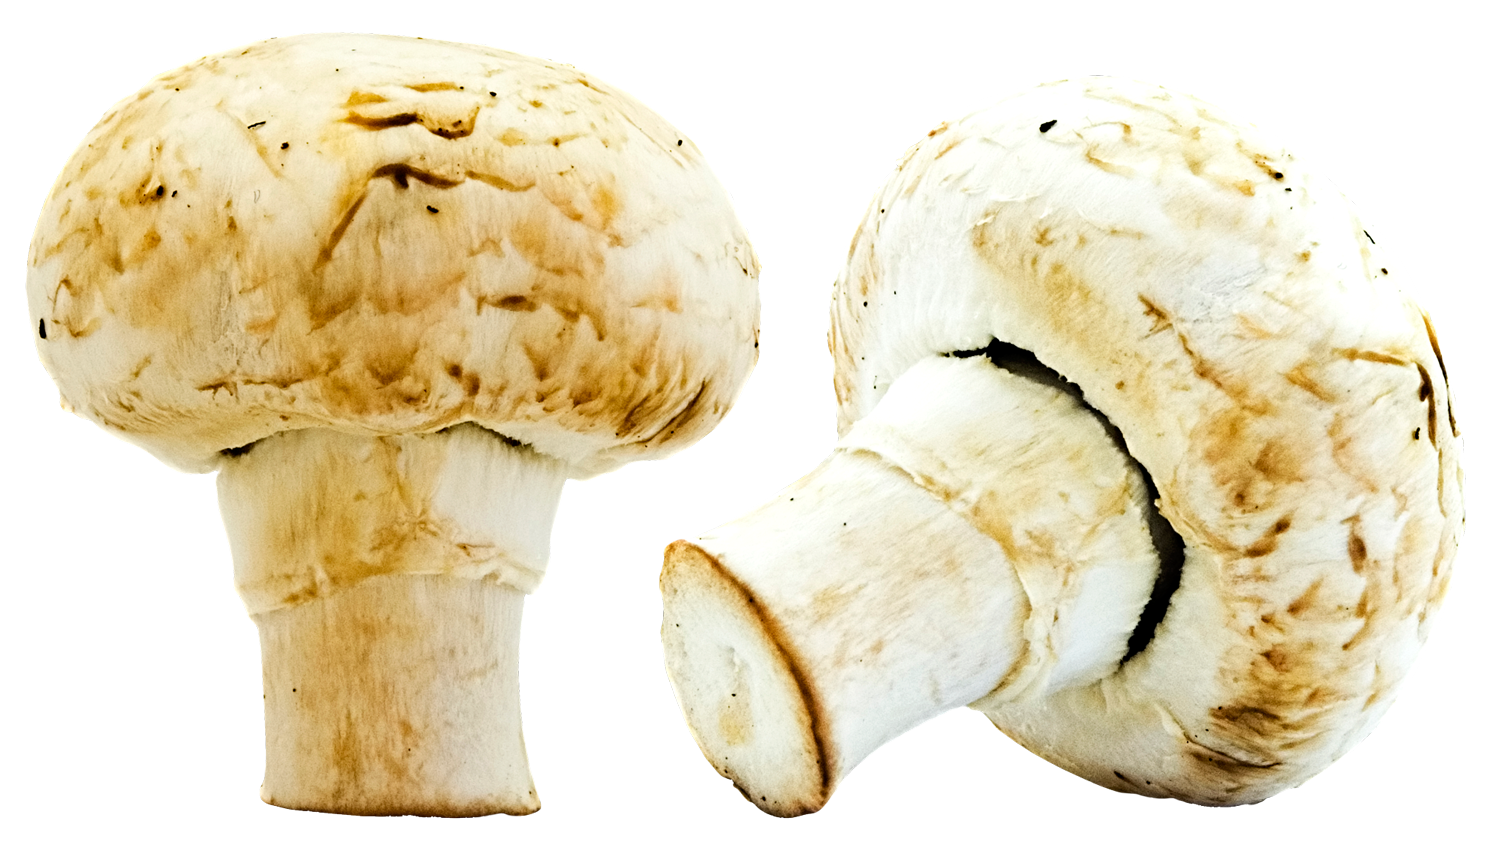 Mushrooms PNG Image